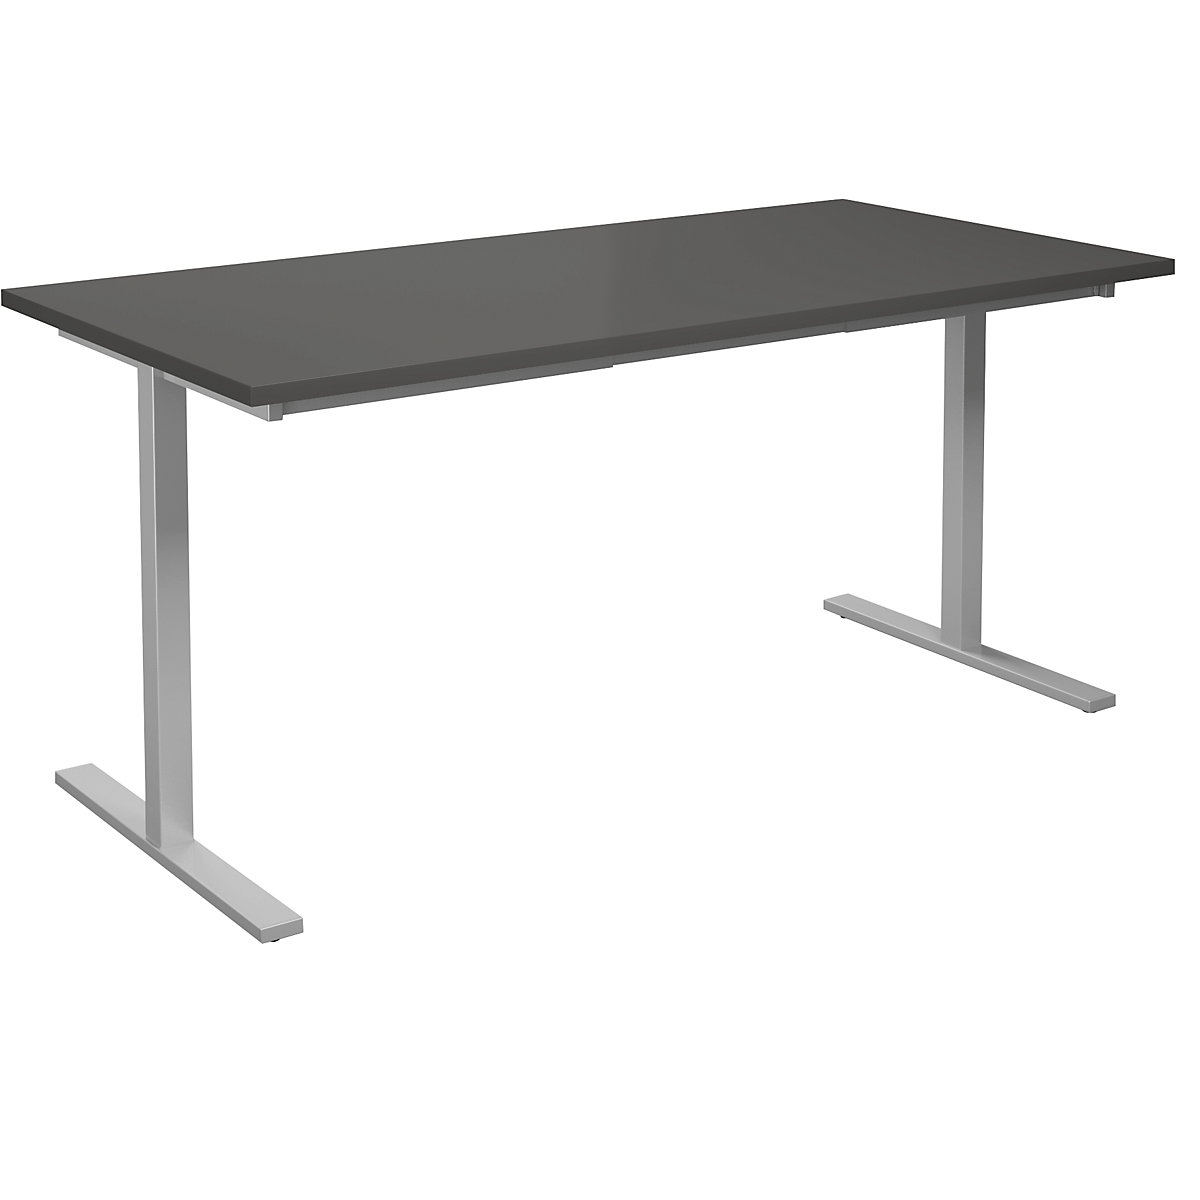 DUO-T multi-purpose desk, straight tabletop, WxD 1600 x 800 mm, dark grey, silver-7